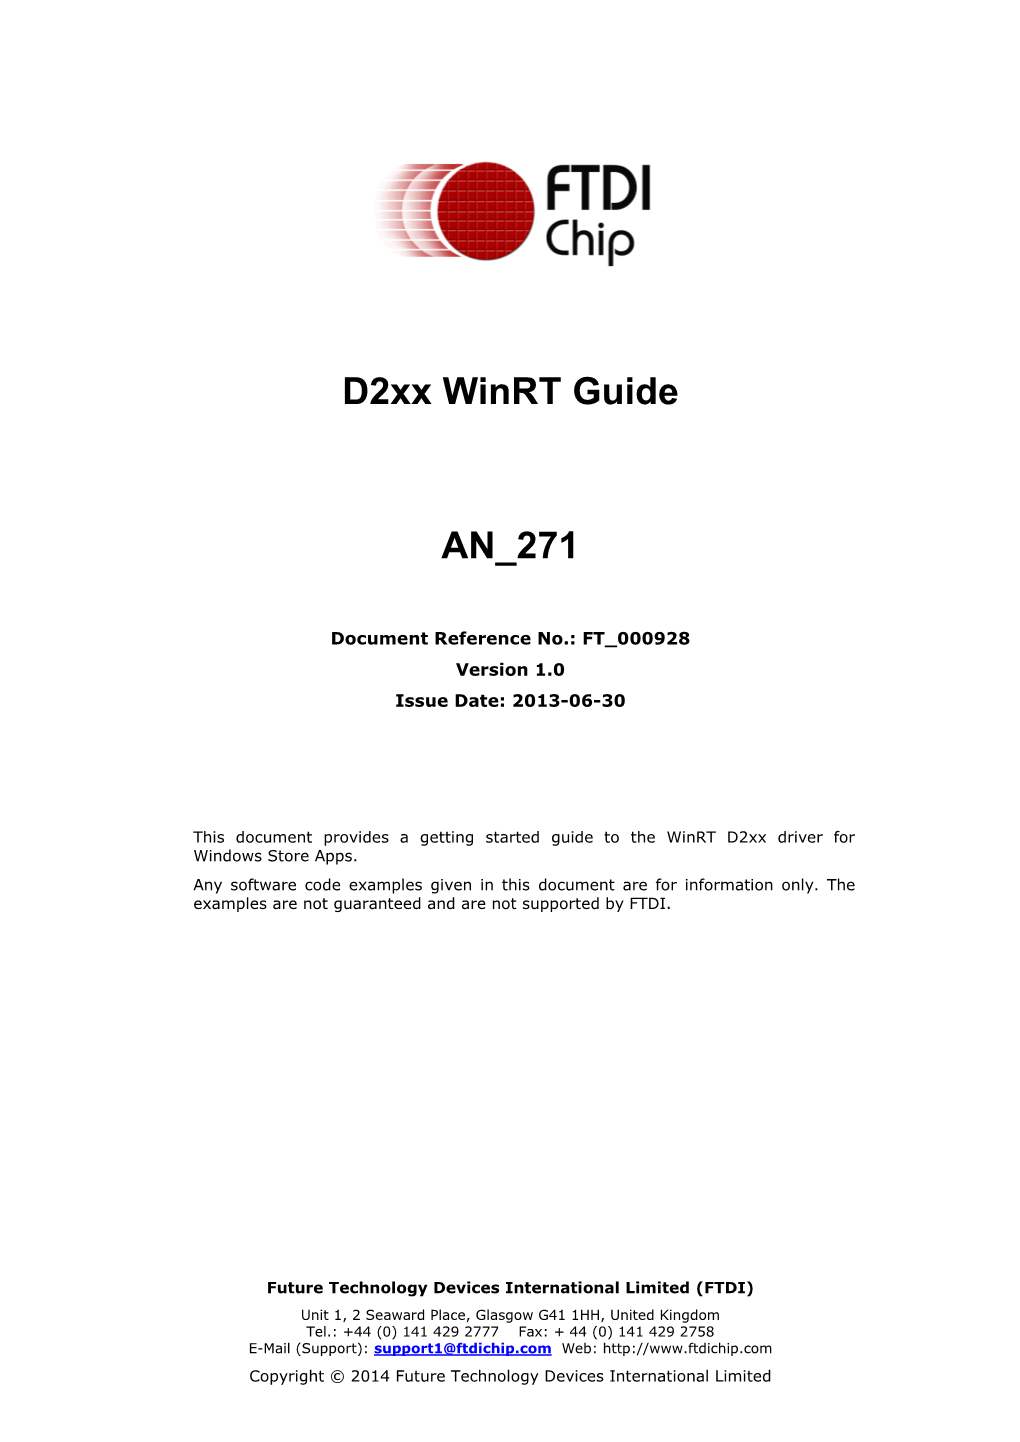 D2xx Winrt Guide an 271